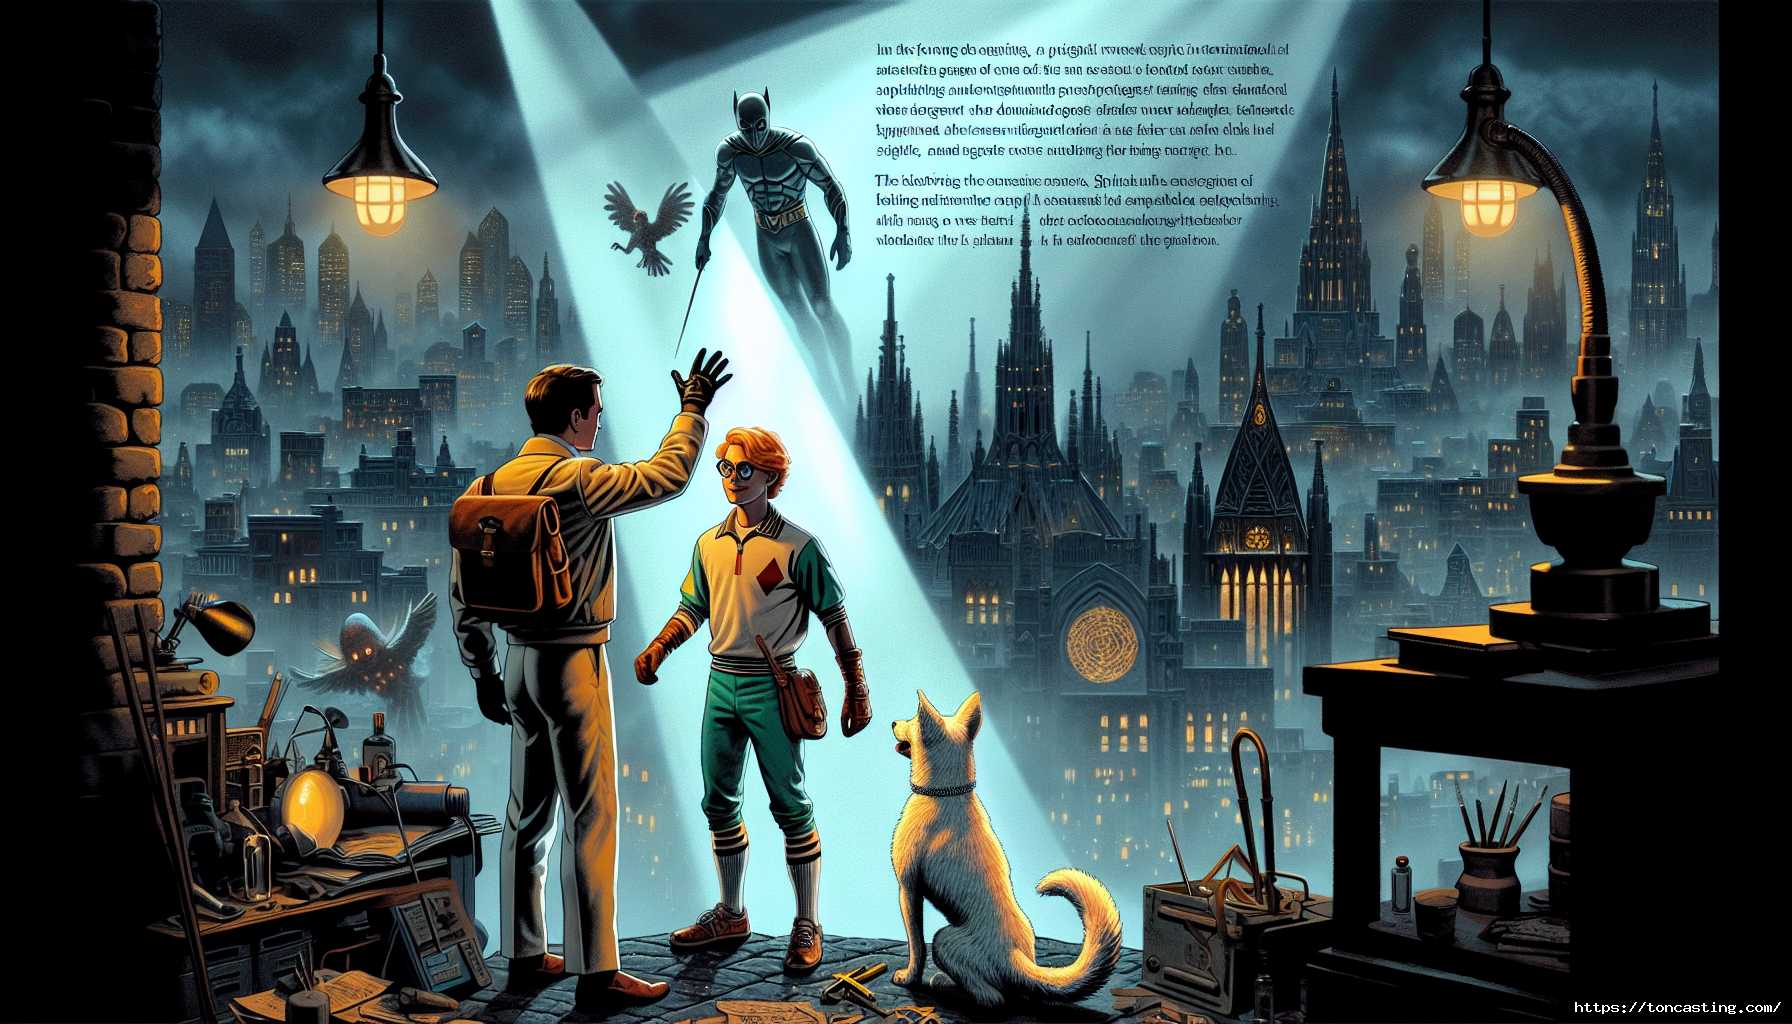 Batman et Robin surplombant une ville sombre, avec un chien à leurs côtés.